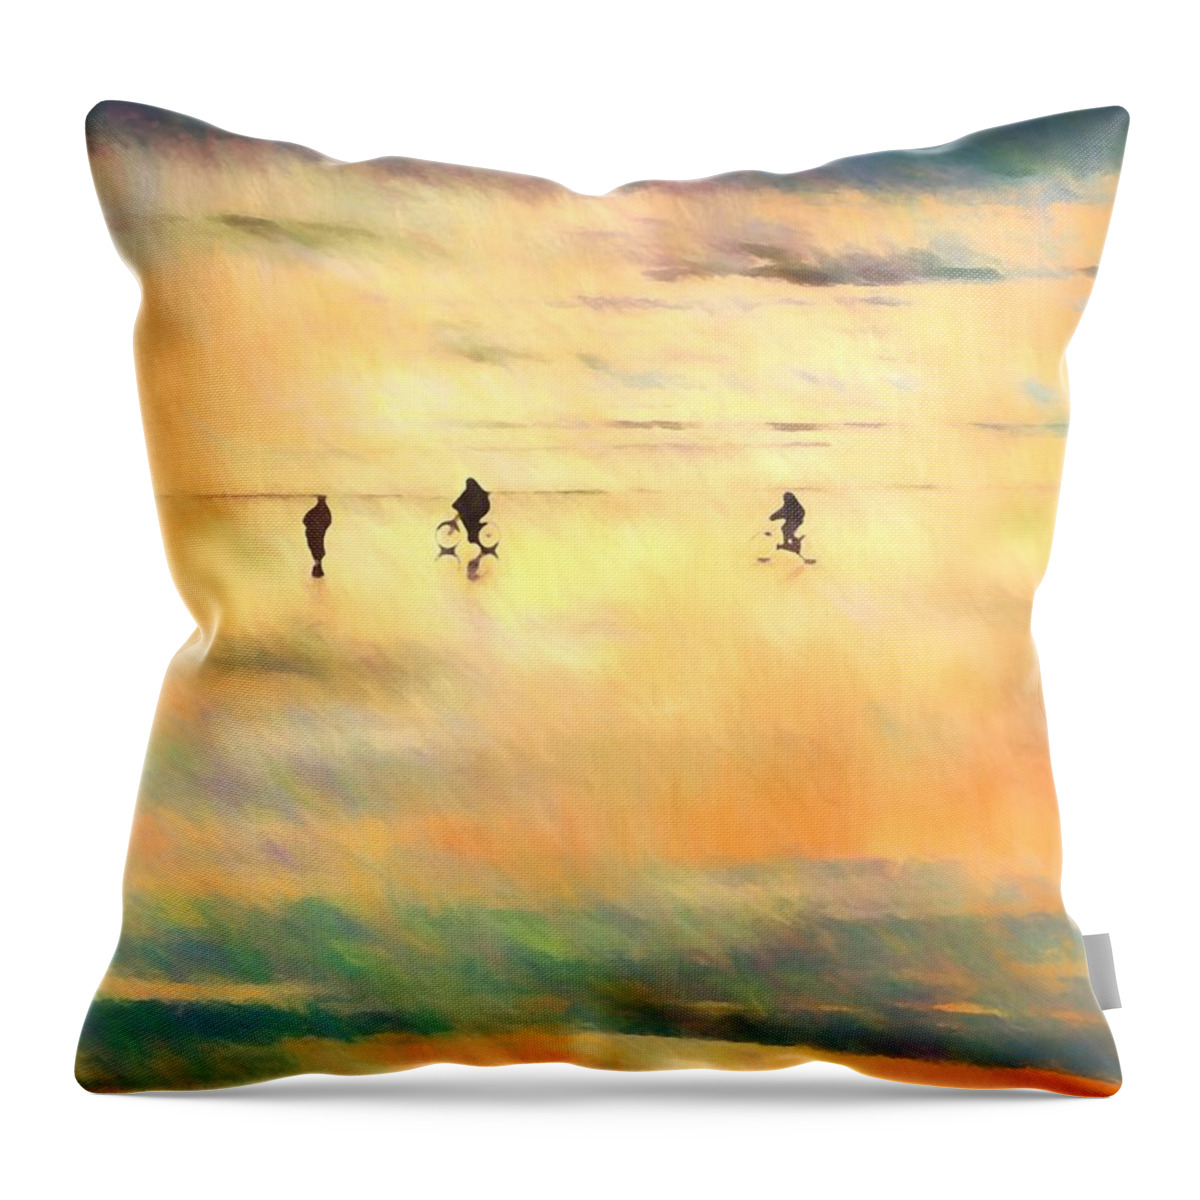 Sunset Throw Pillow featuring the photograph Beach Bike by Kathy Bassett